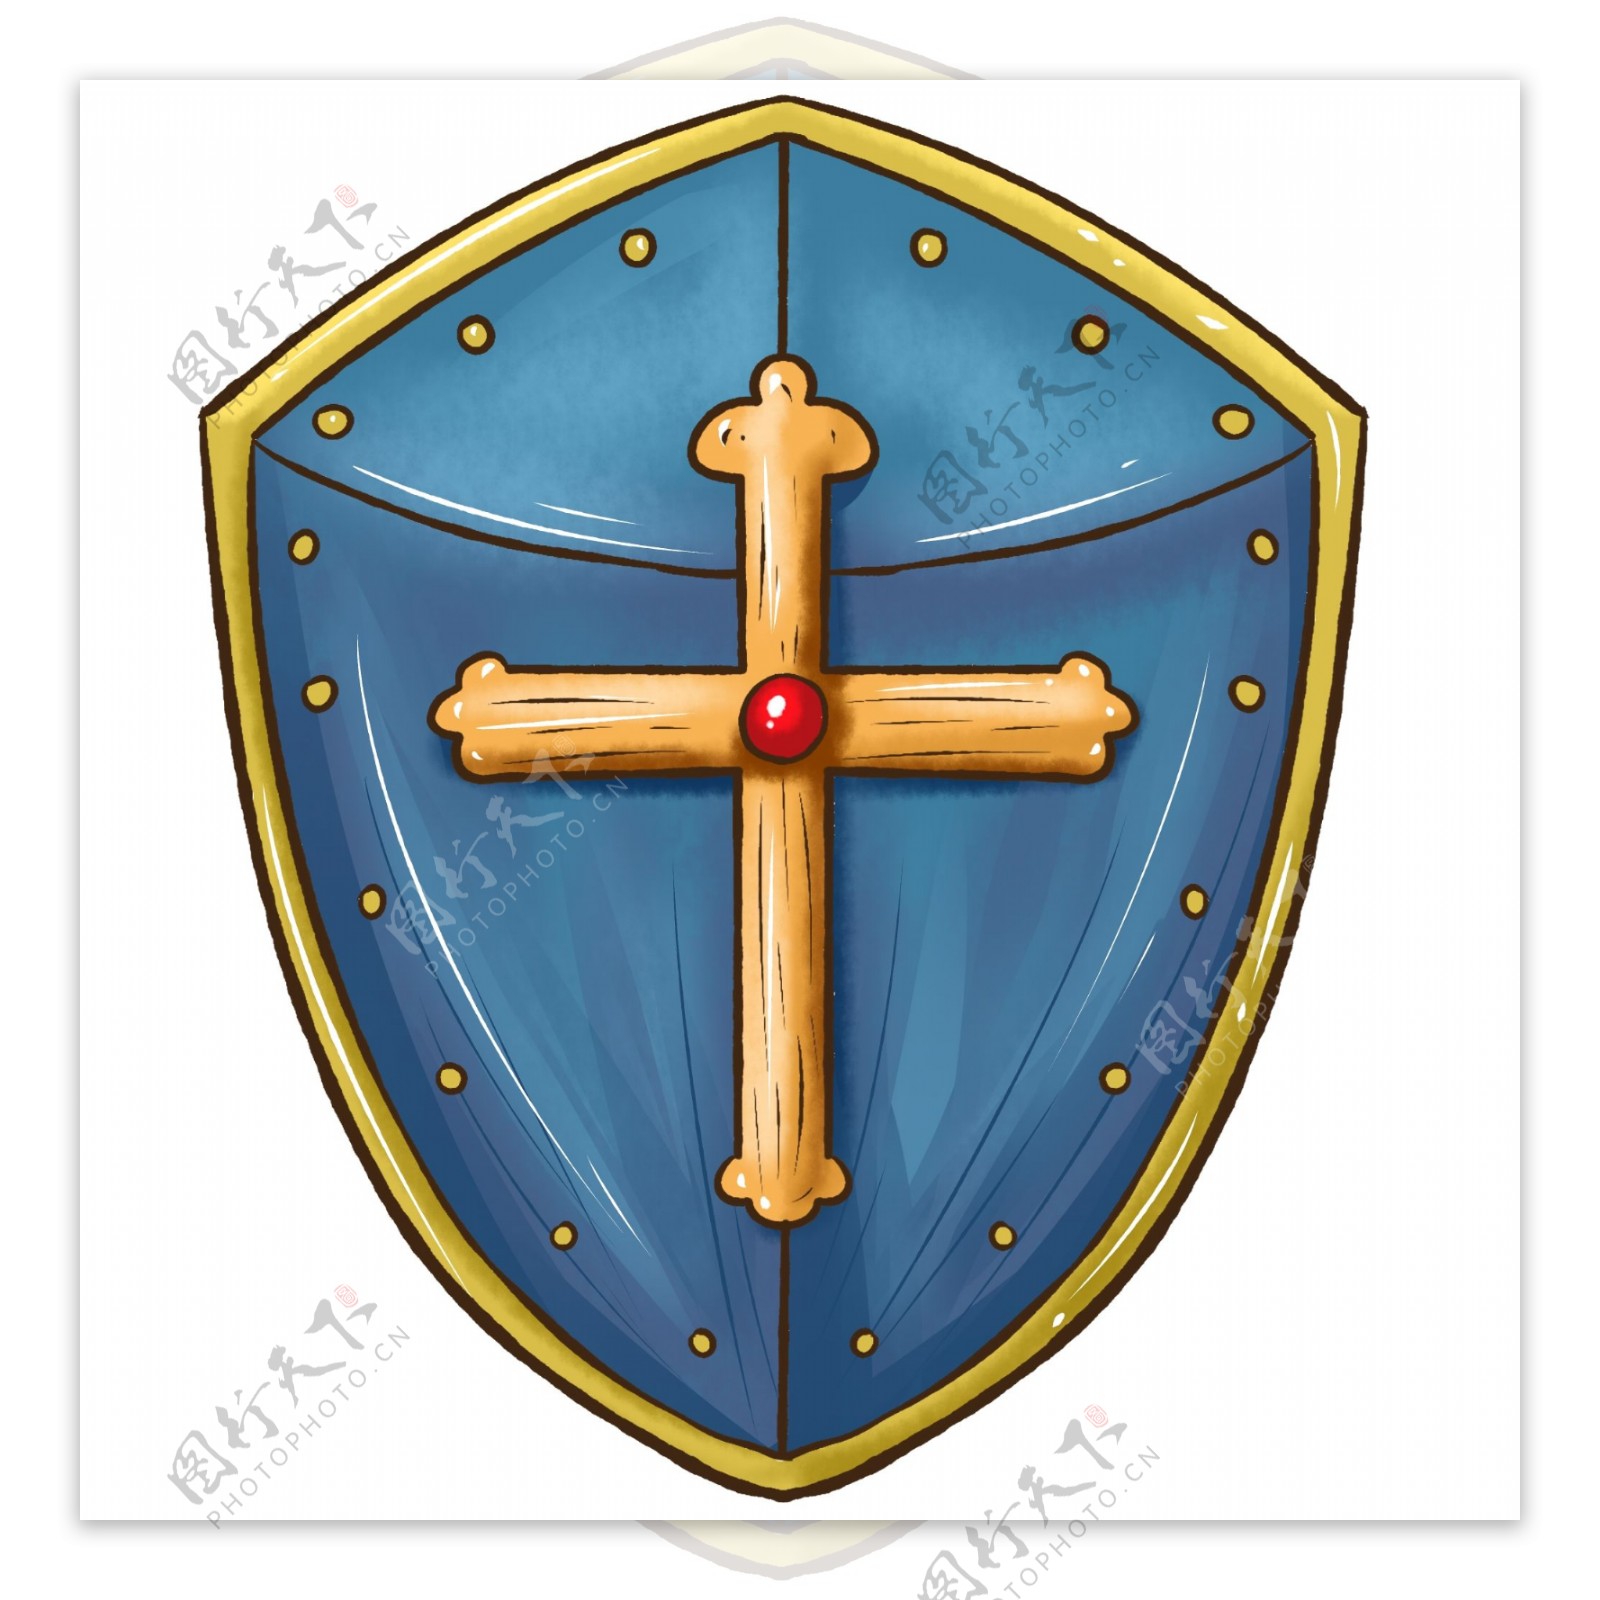 商用手绘十字架骑士盾牌蓝色元素